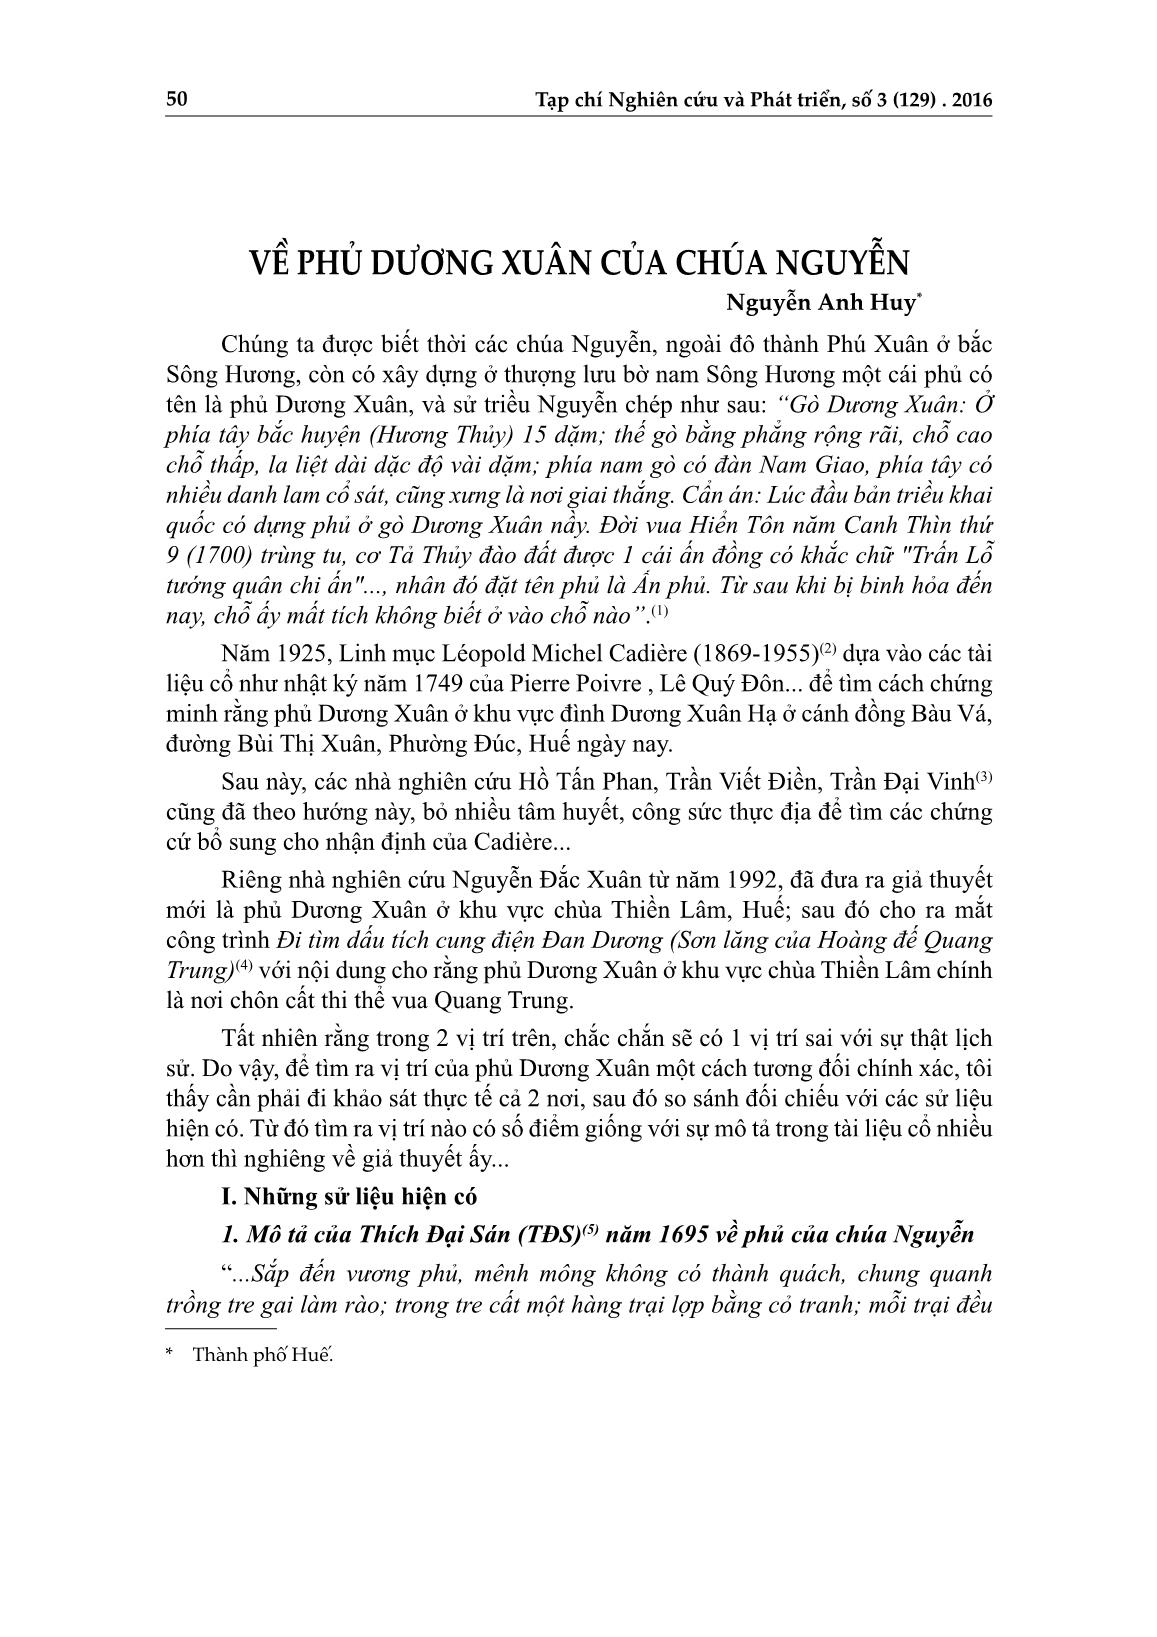 Về phủ Dương Xuân của chúa Nguyễn trang 1